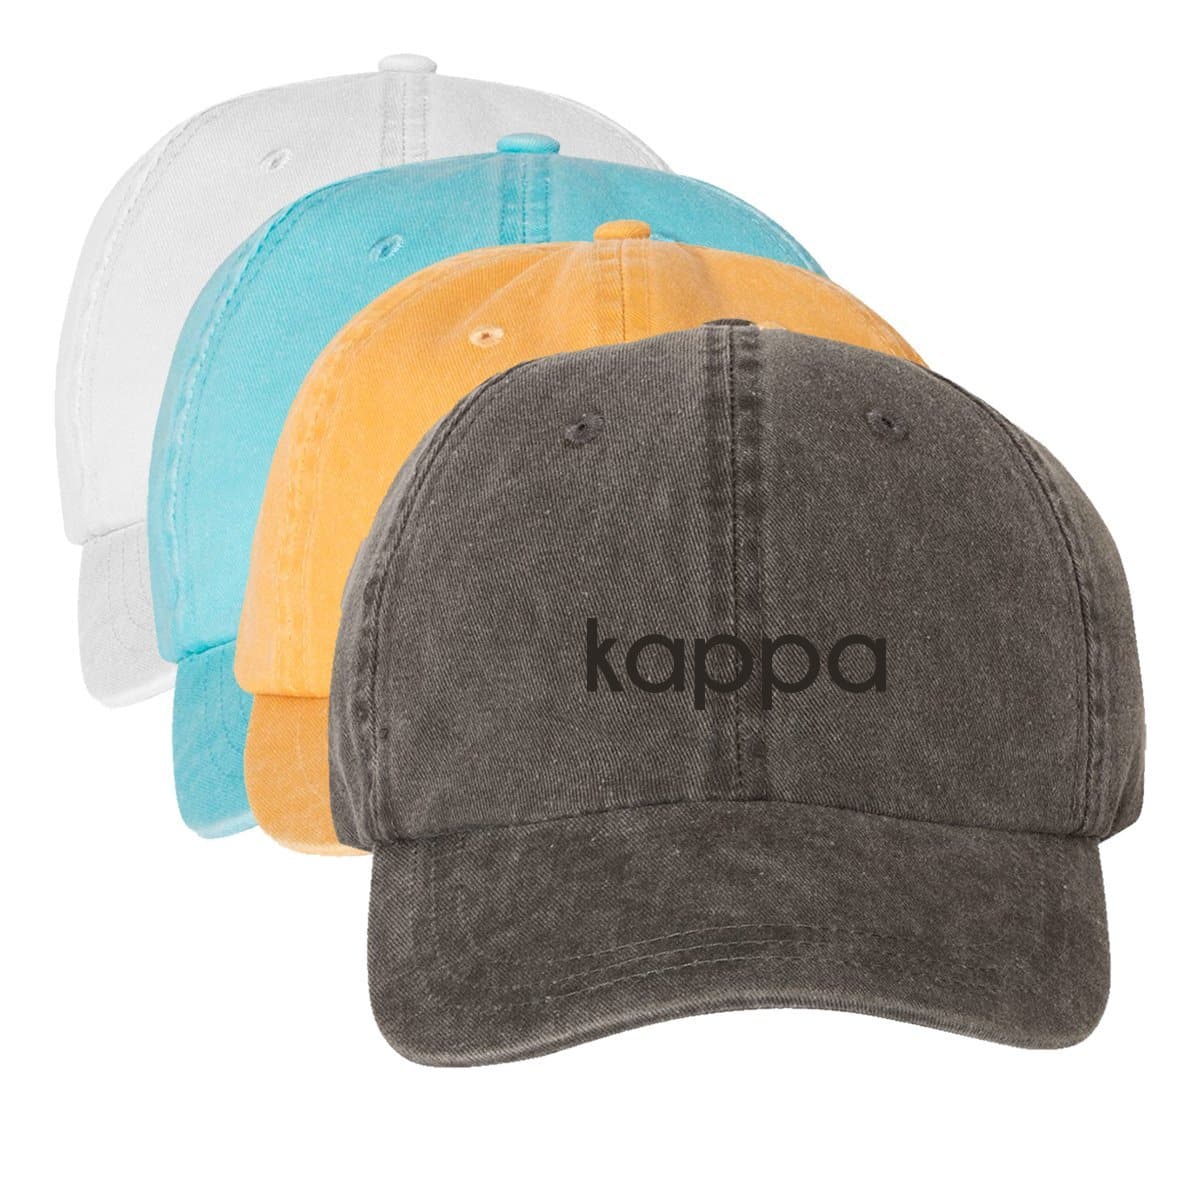 Kappa Tone On Tone Hat | Kappa Kappa Gamma | Headwear > Billed hats